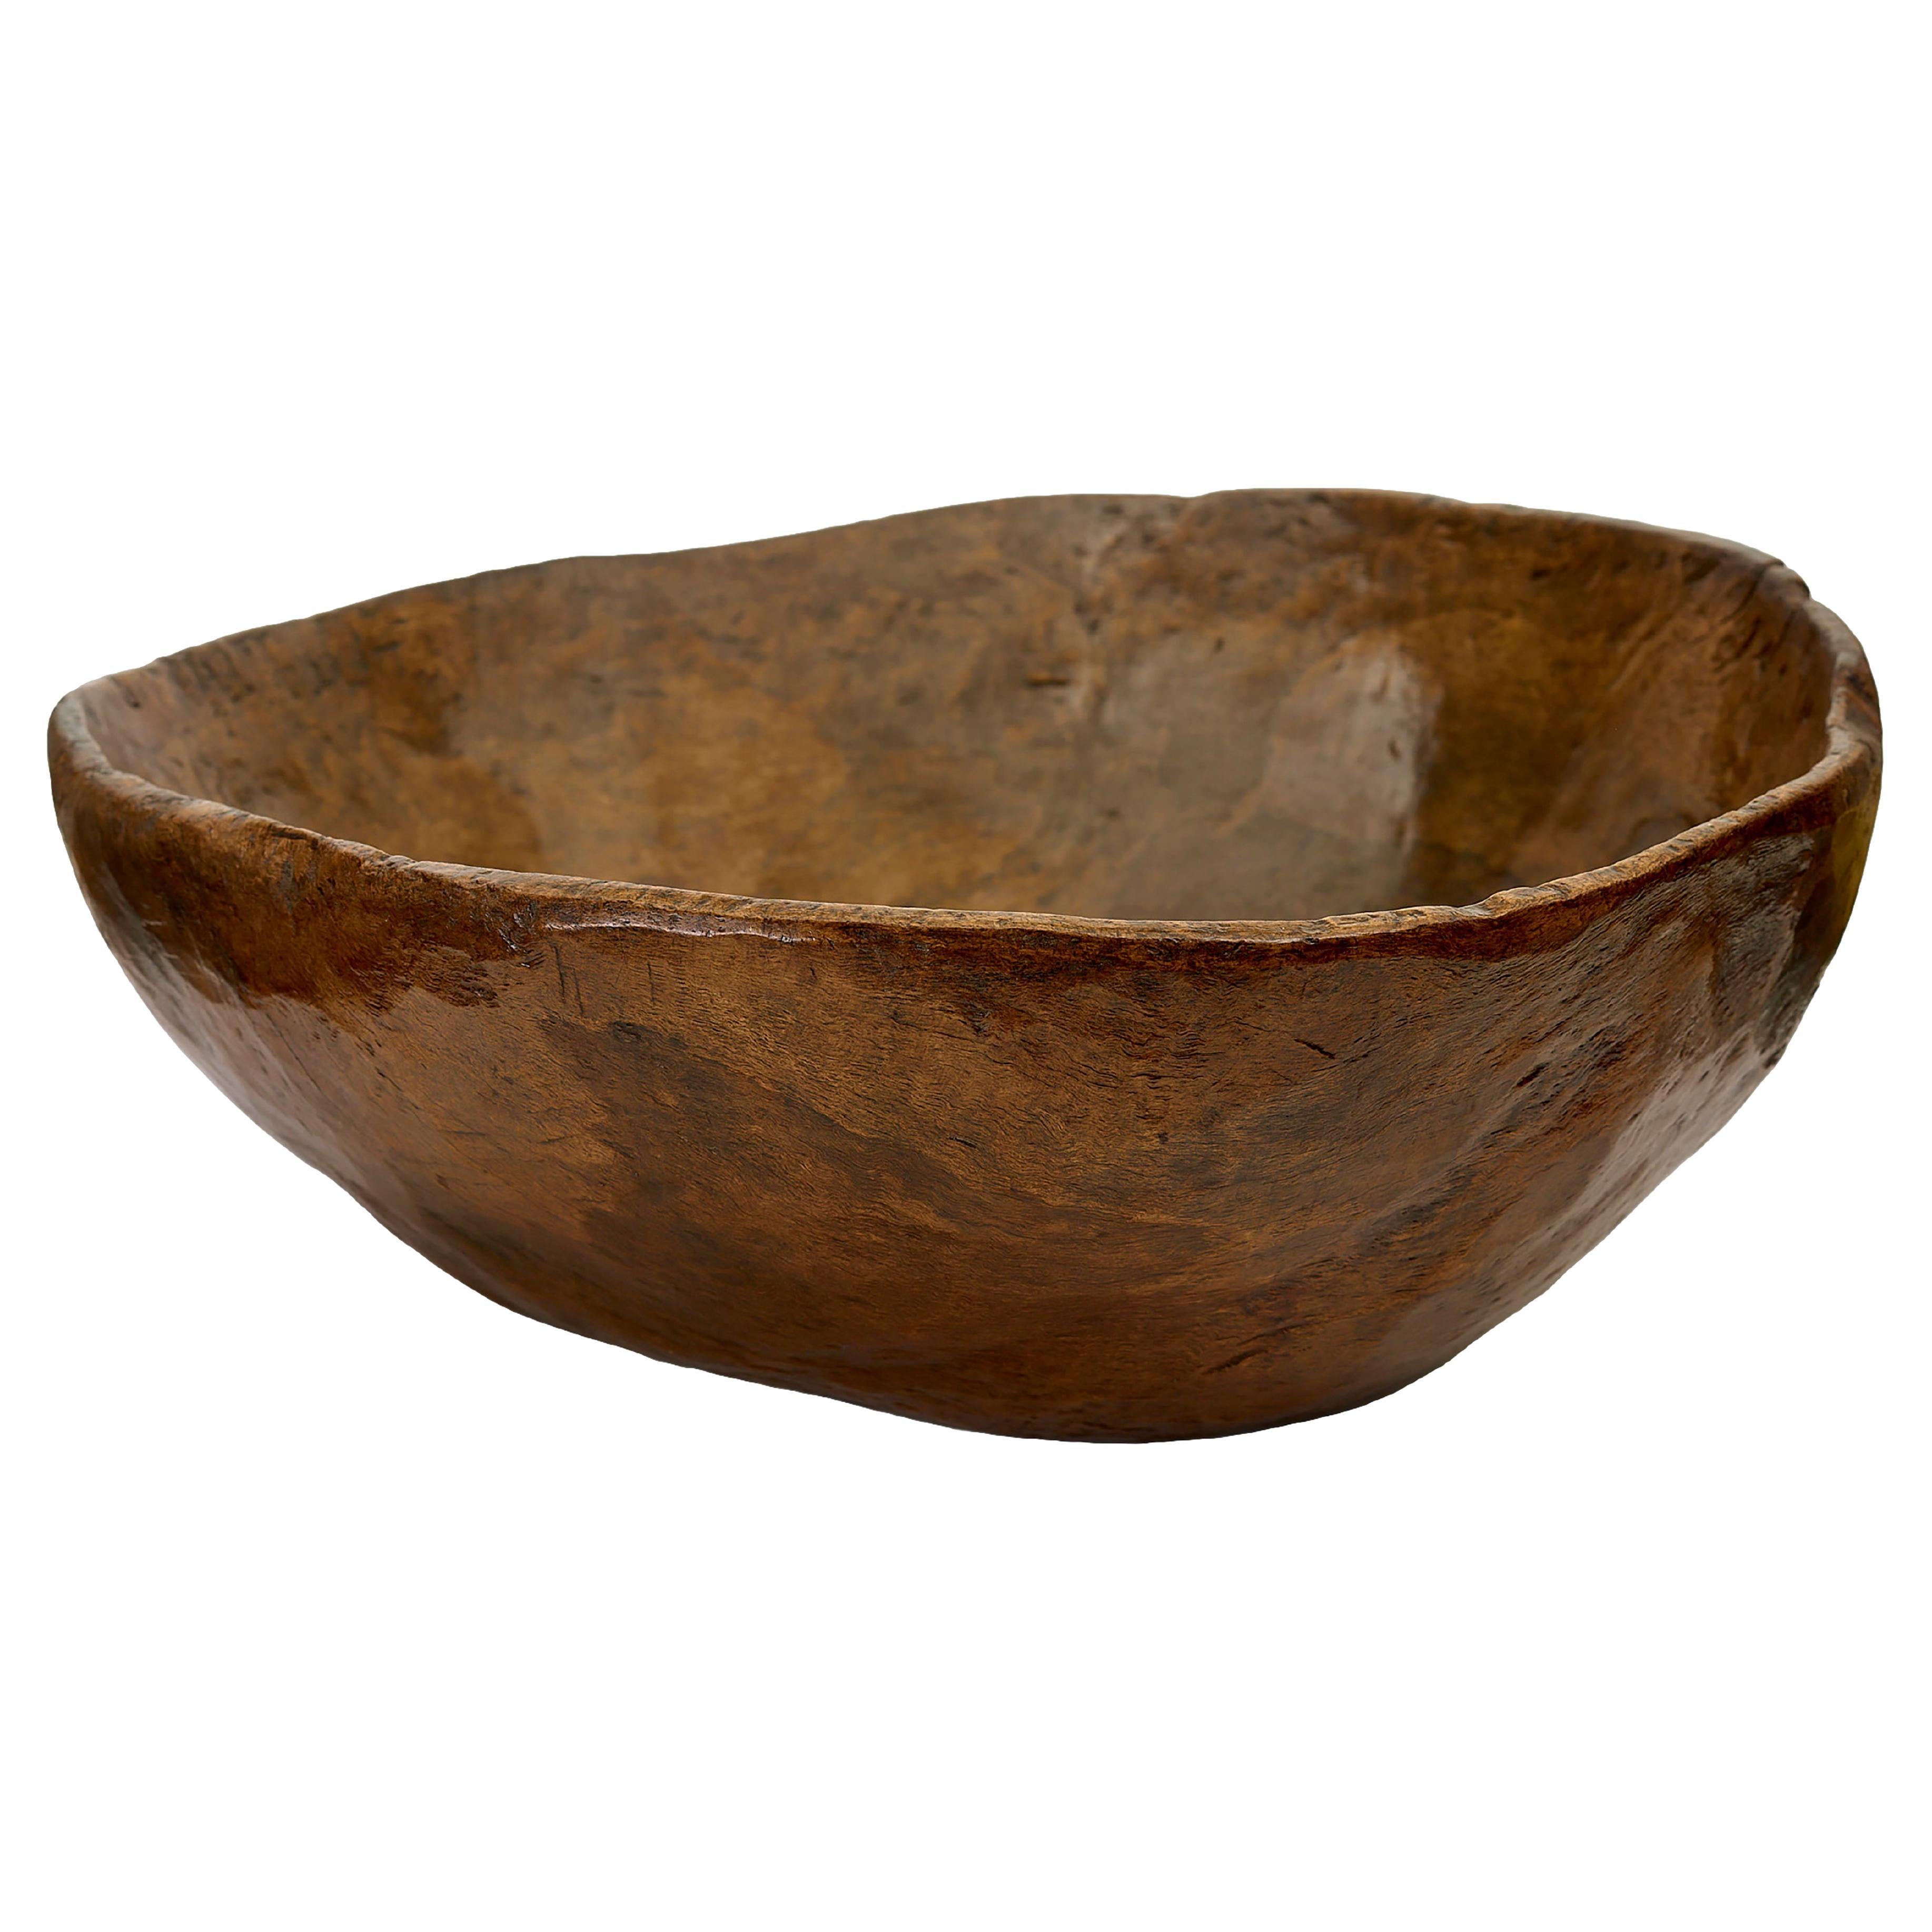 Massive heavy treen bowl in walnut